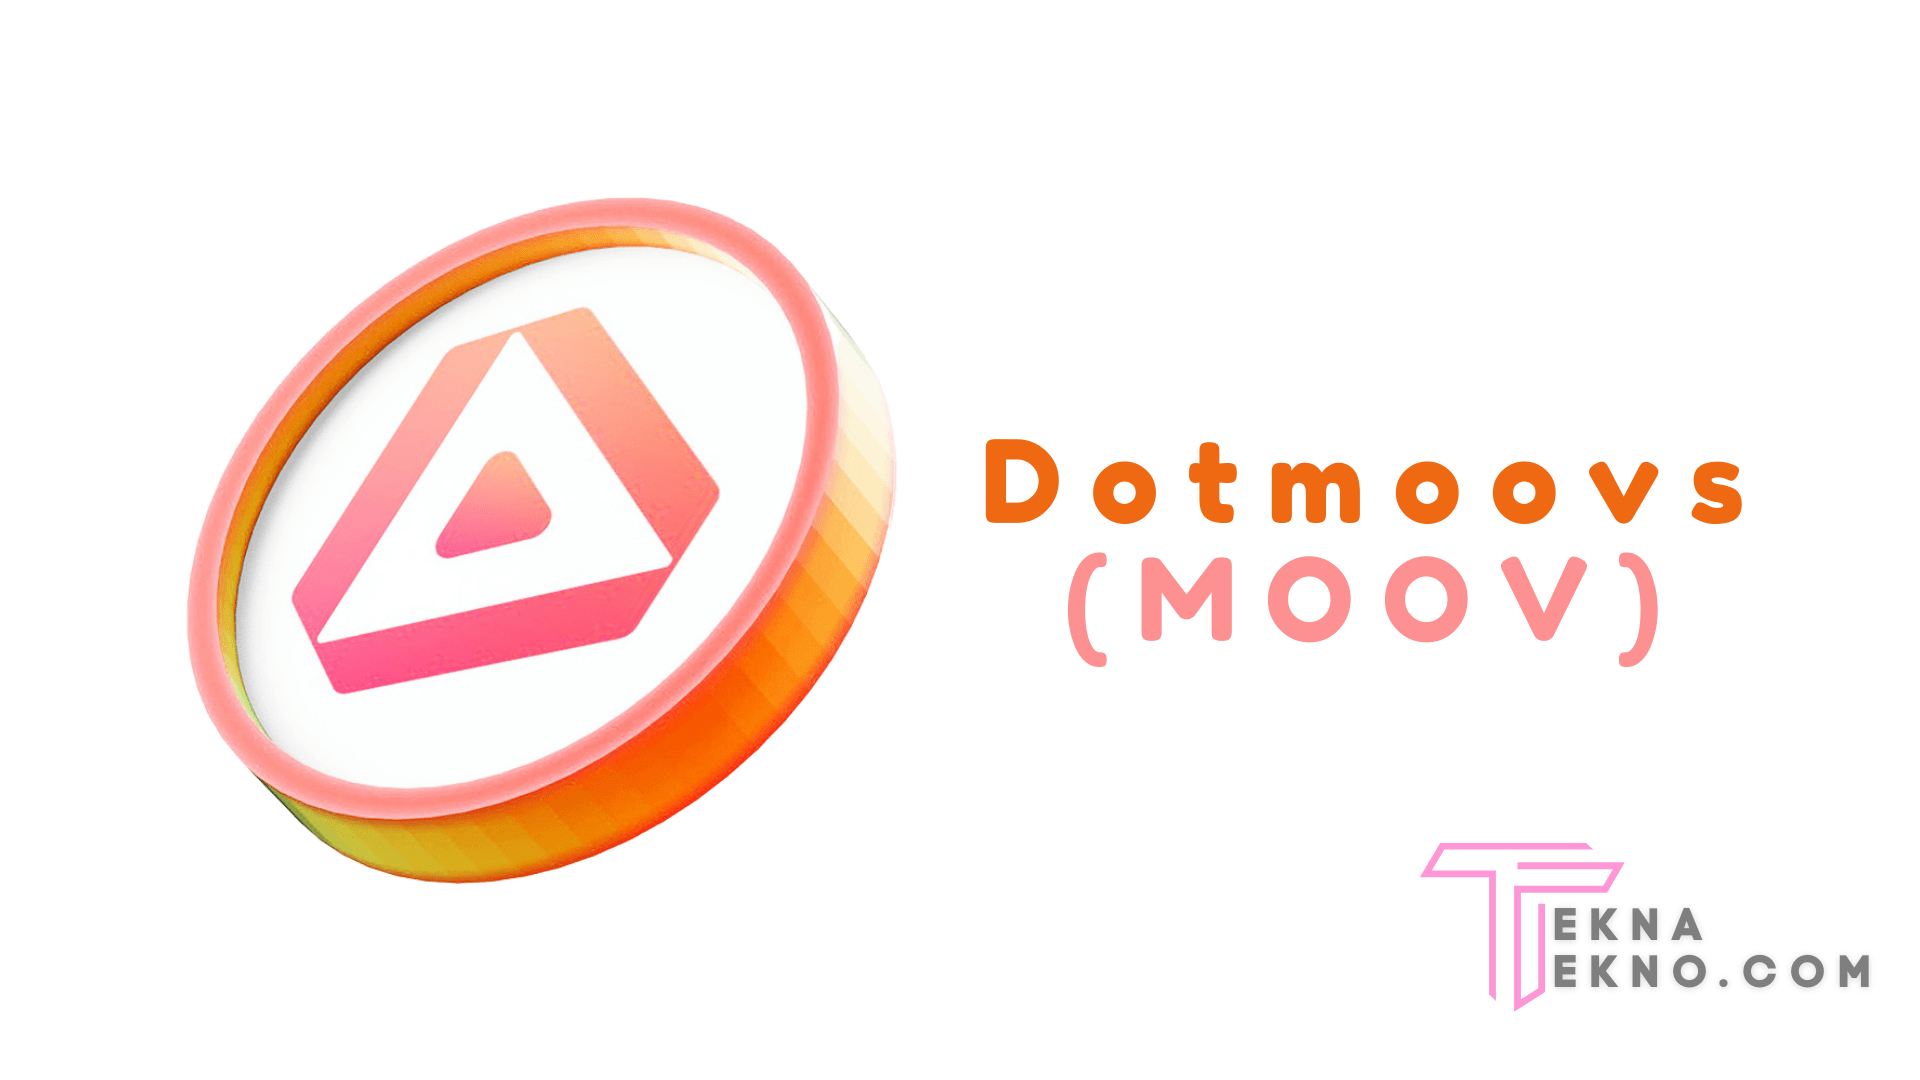 Mengenal Dotmoovs (MOOV)